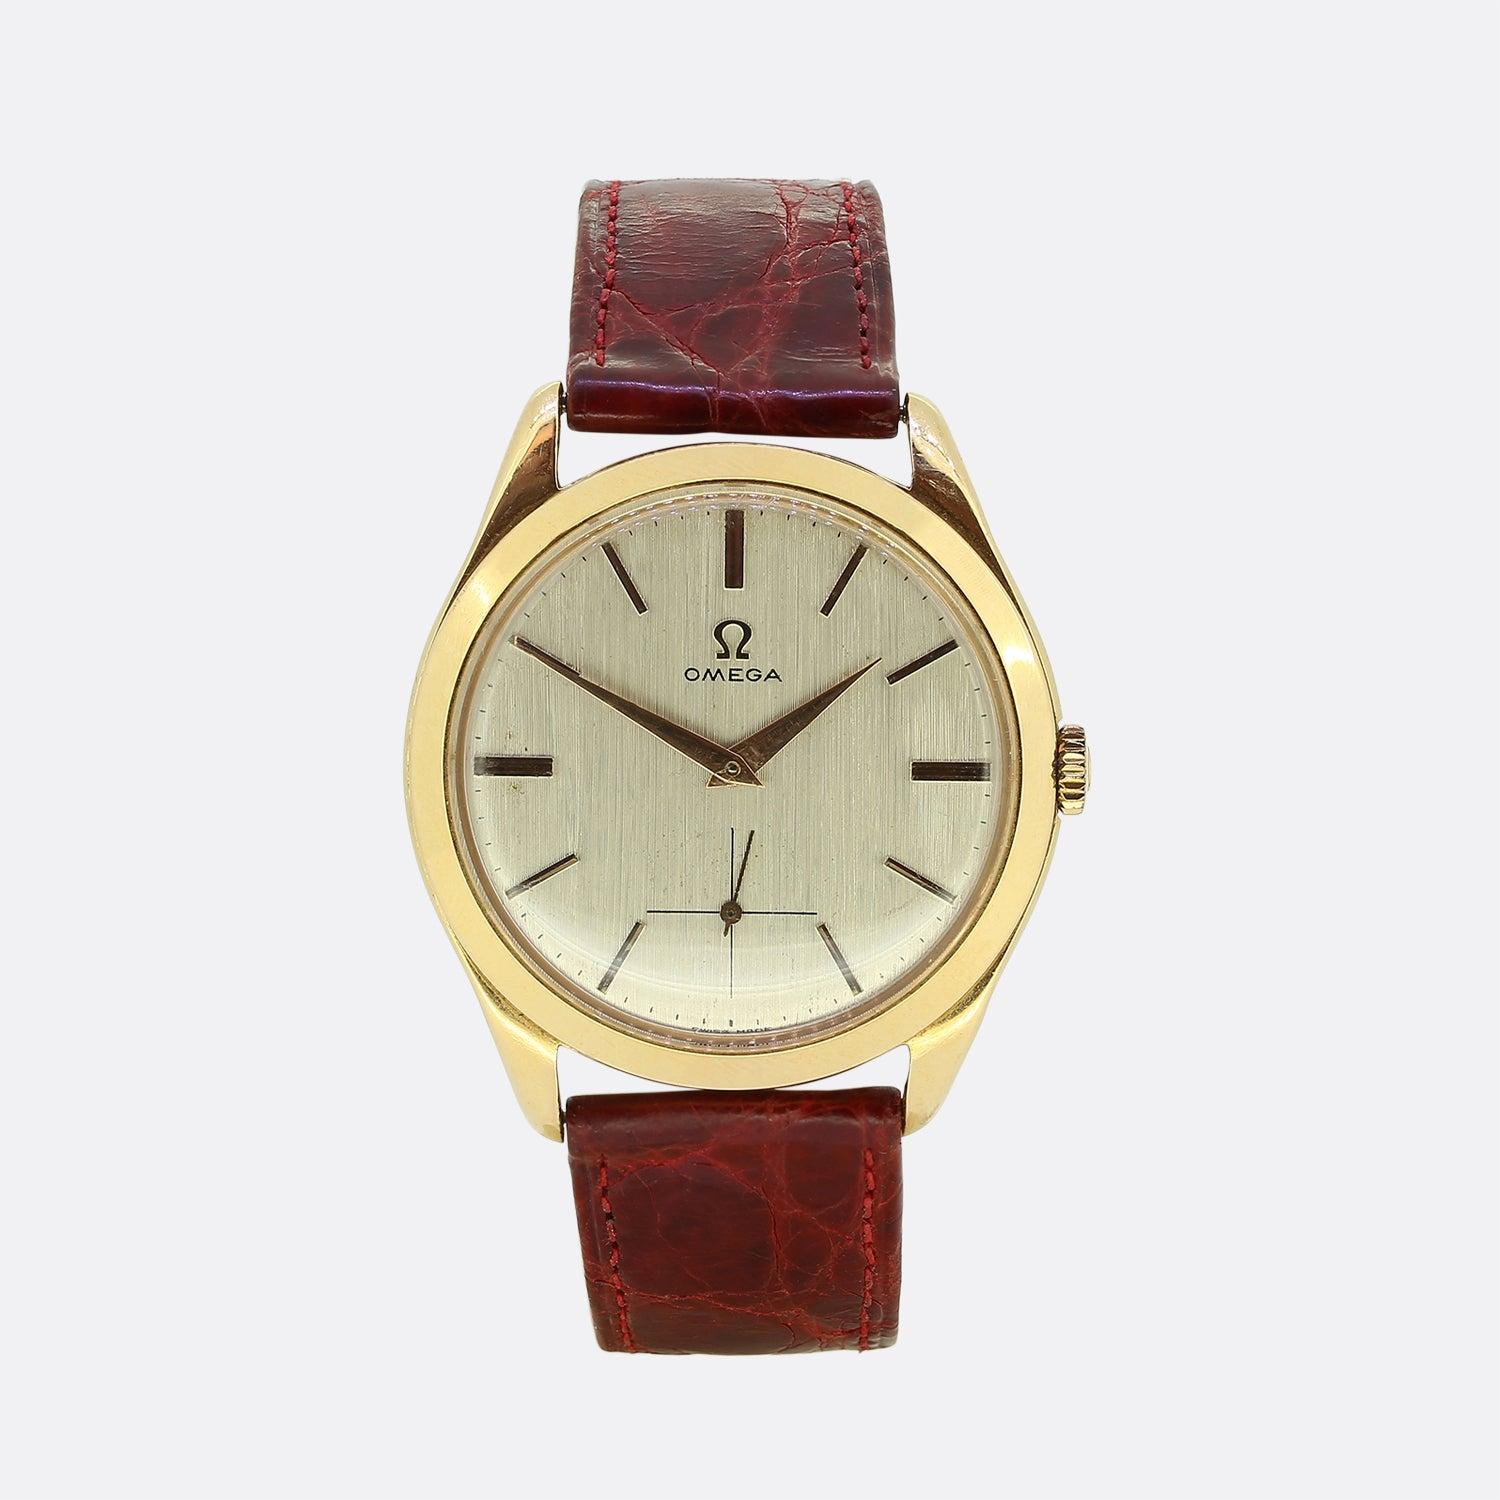 Hier haben wir eine wunderschön gefertigte Uhr von der weltbekannten Uhrenmanufaktur Omega. Ein klassisches Vintage-Design bietet ein cremefarbenes Zifferblatt, das von goldenen Stundenstäben, dem Omega-Schriftzug und dem Hilfszifferblatt geschmückt